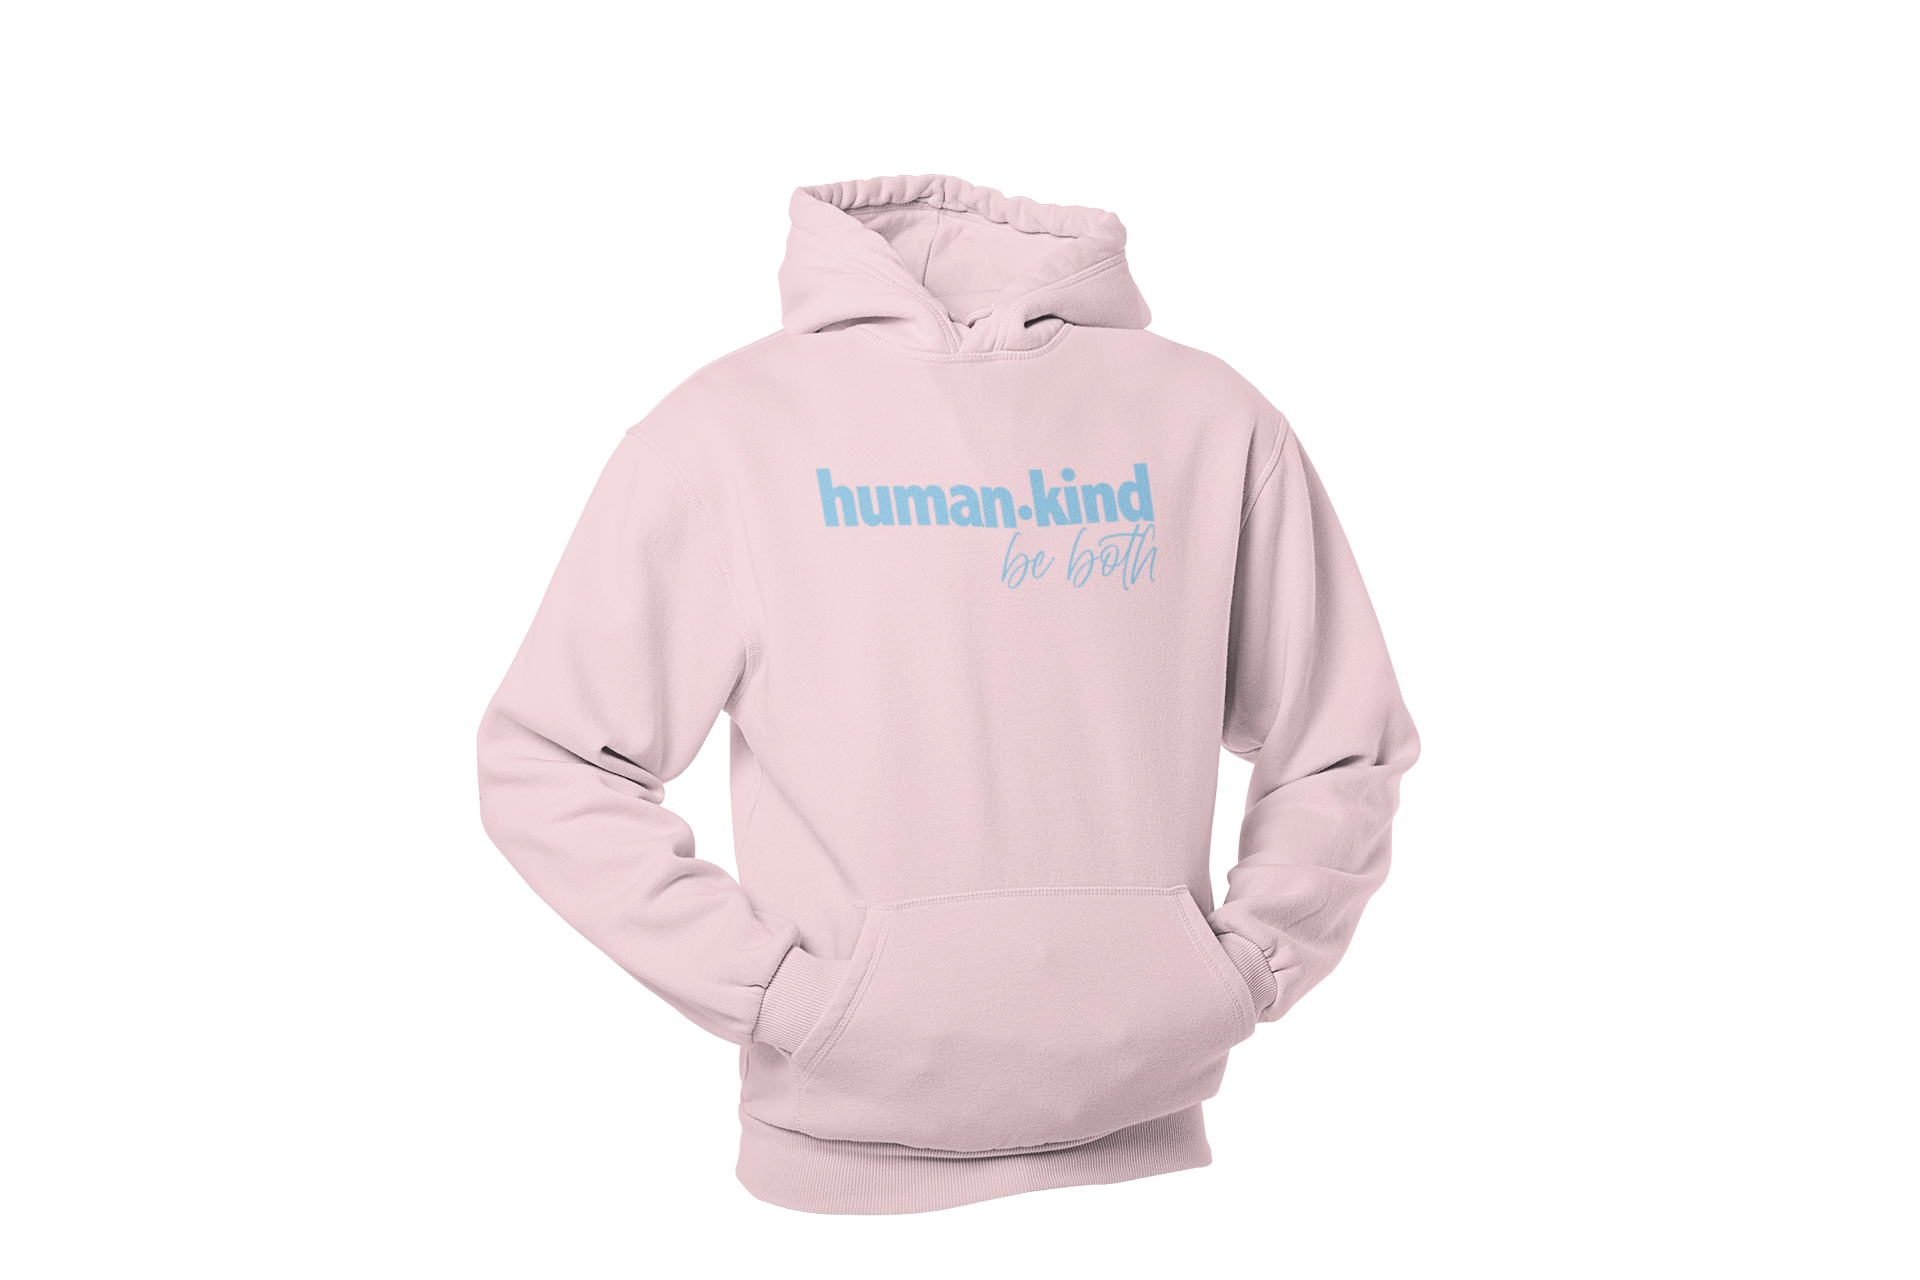 Human + Kind [be both] • Pink + Blue Hoodie